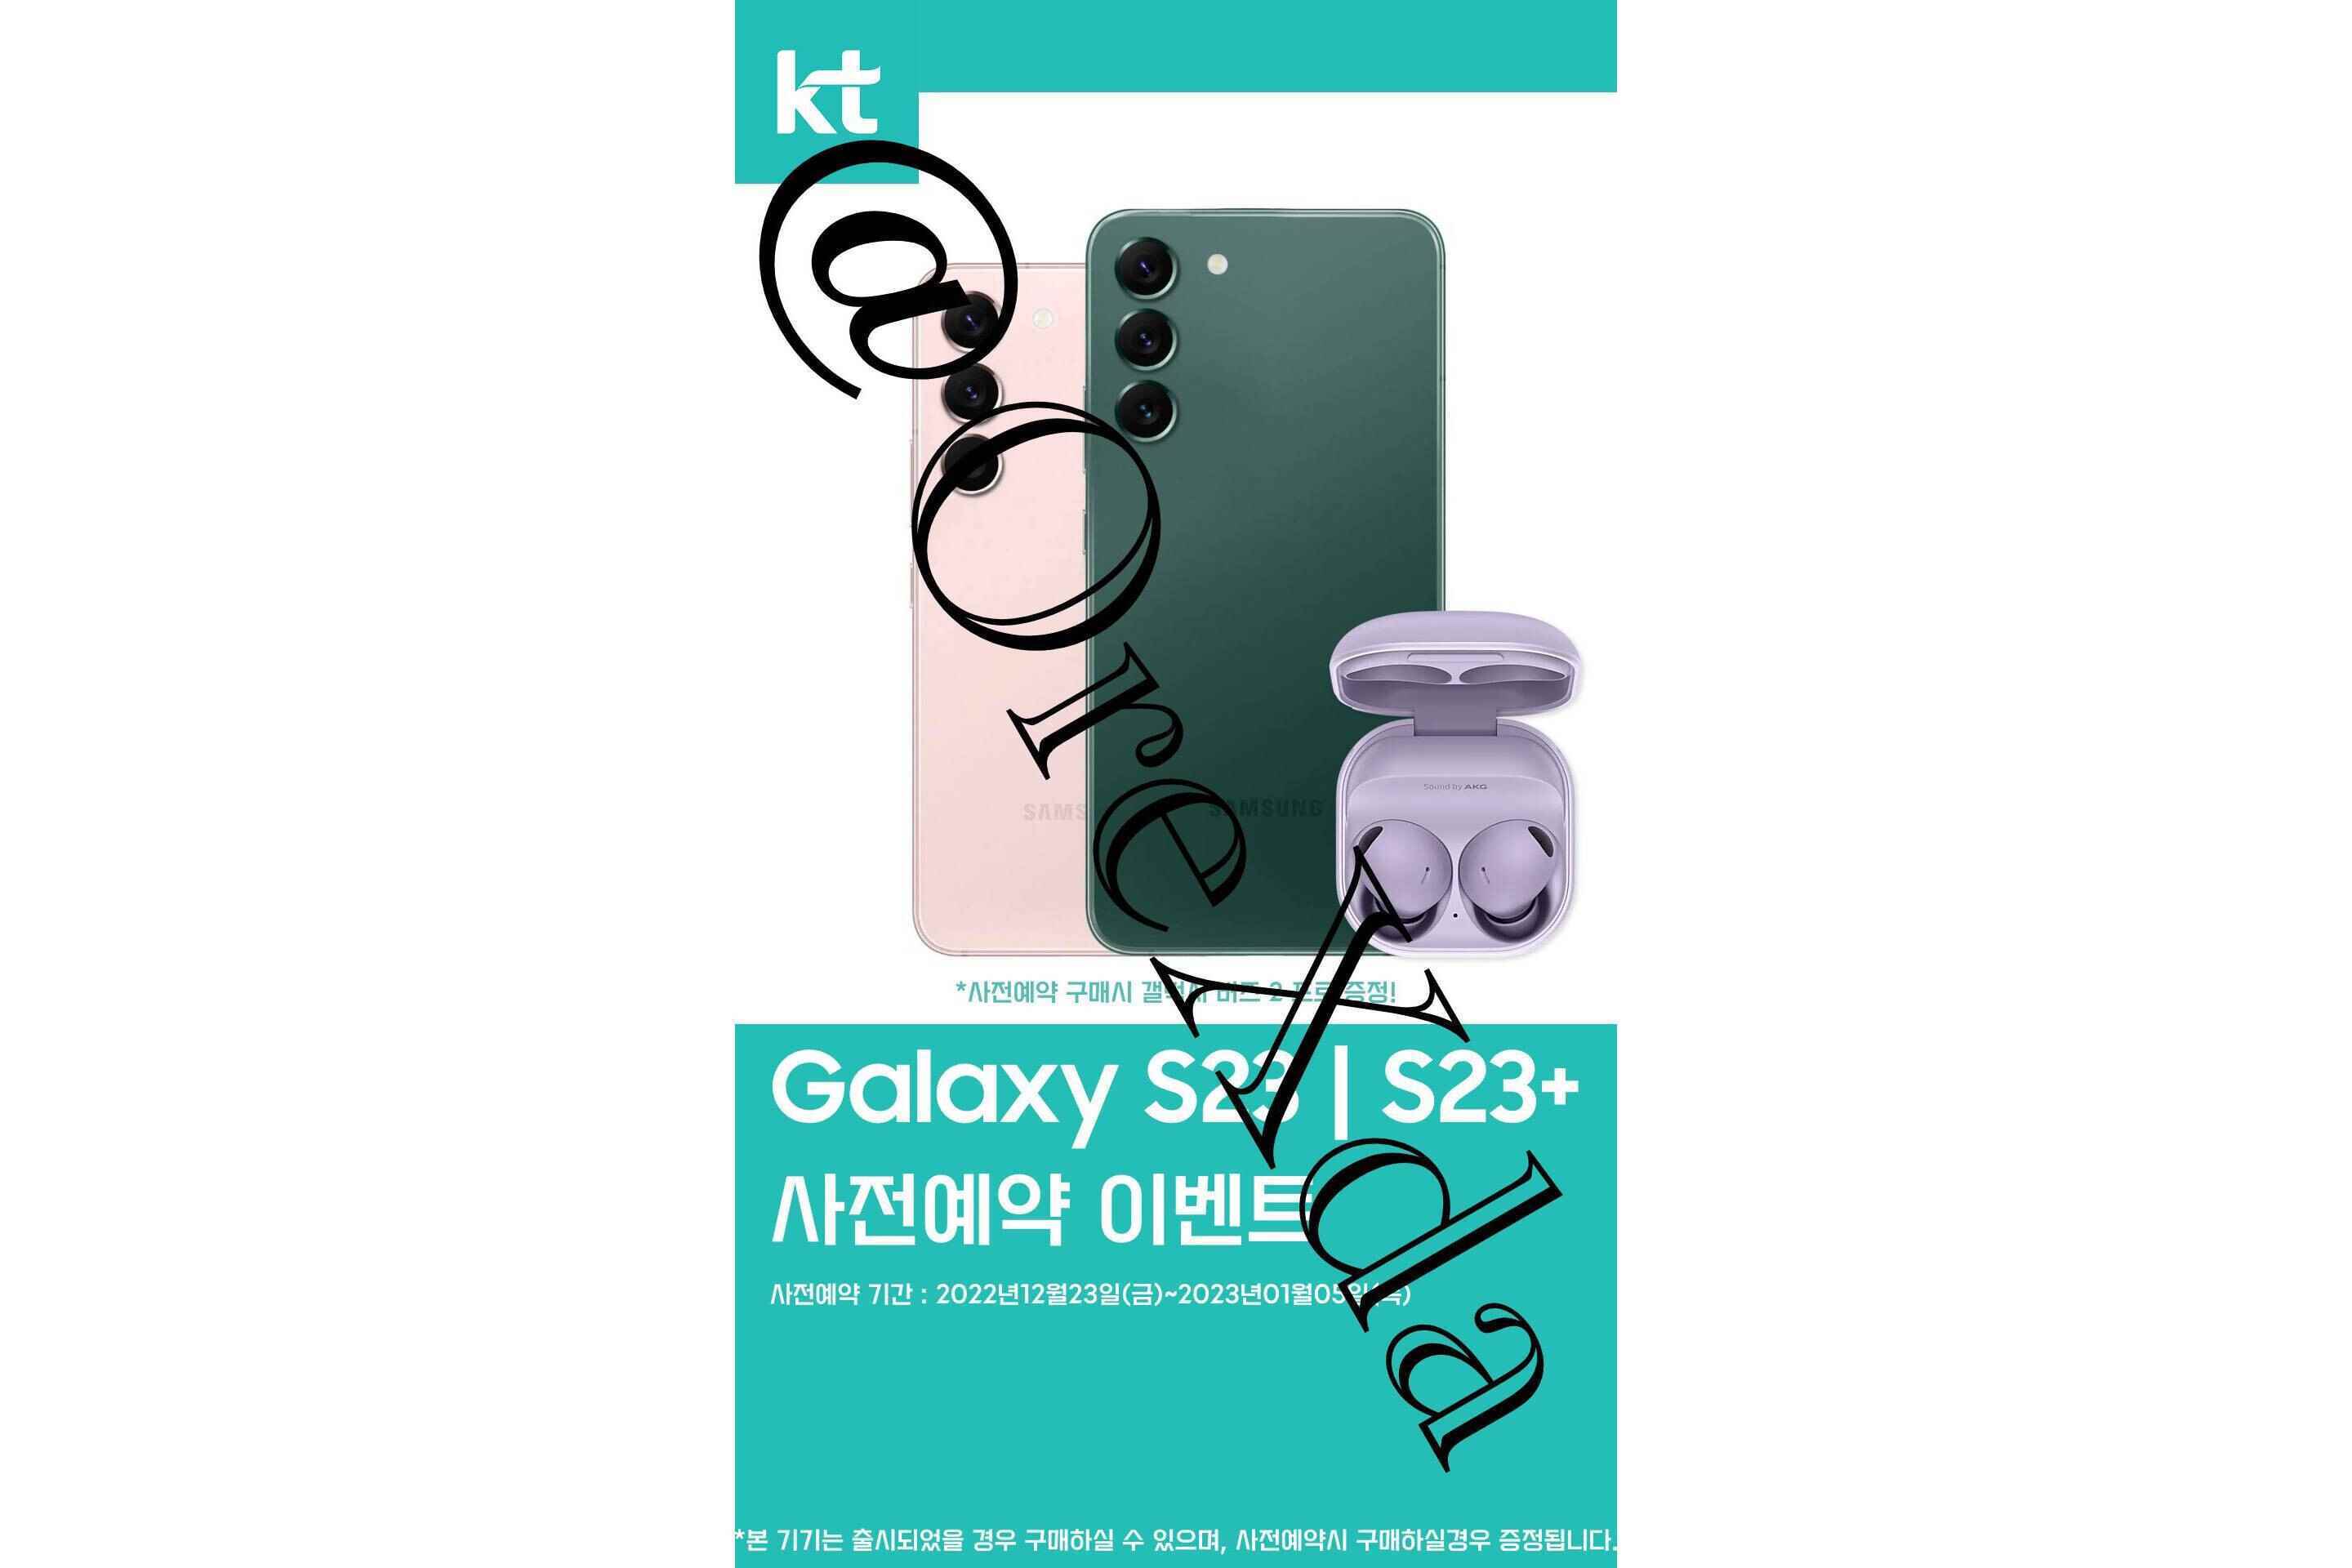 İddiaya göre Galaxy S23 serisi ön sipariş afişi - İddia edilen Galaxy S23 ön sipariş afişi, 2022'nin sonlarındaki duyuru tarihini gösteriyor